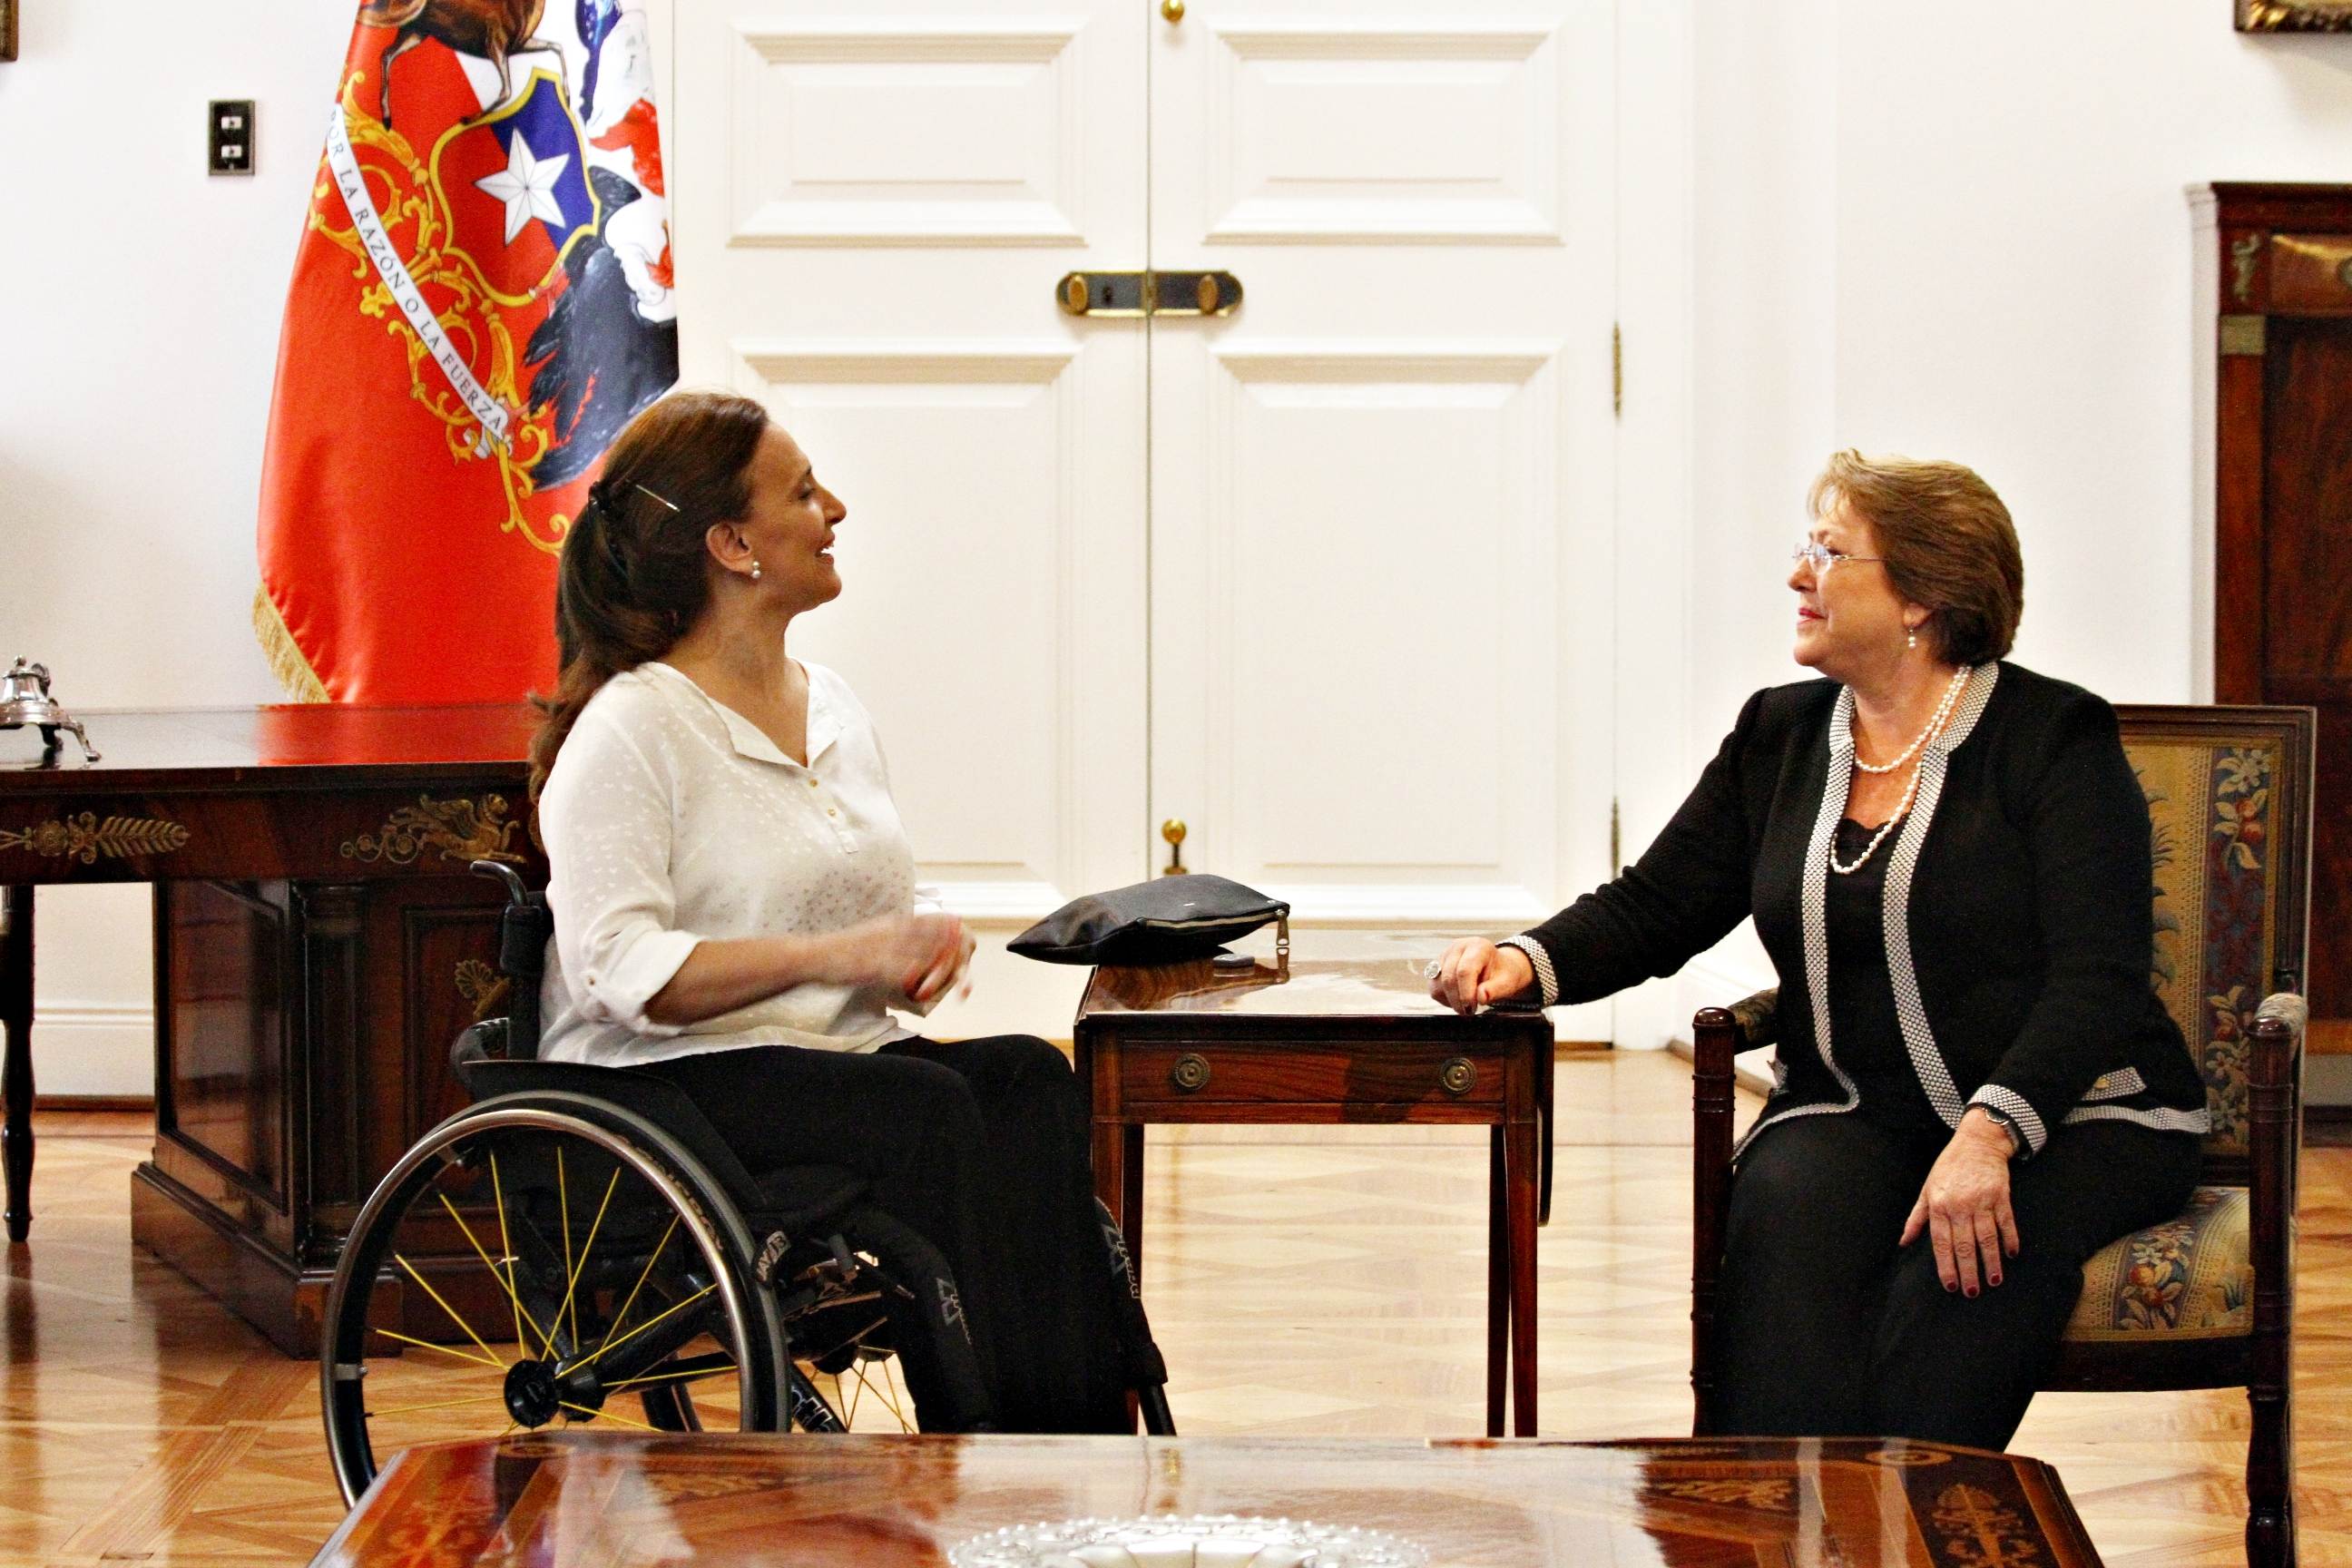 La vicepresidente Gabriela Michetti con la presidente Michelle Bachelet